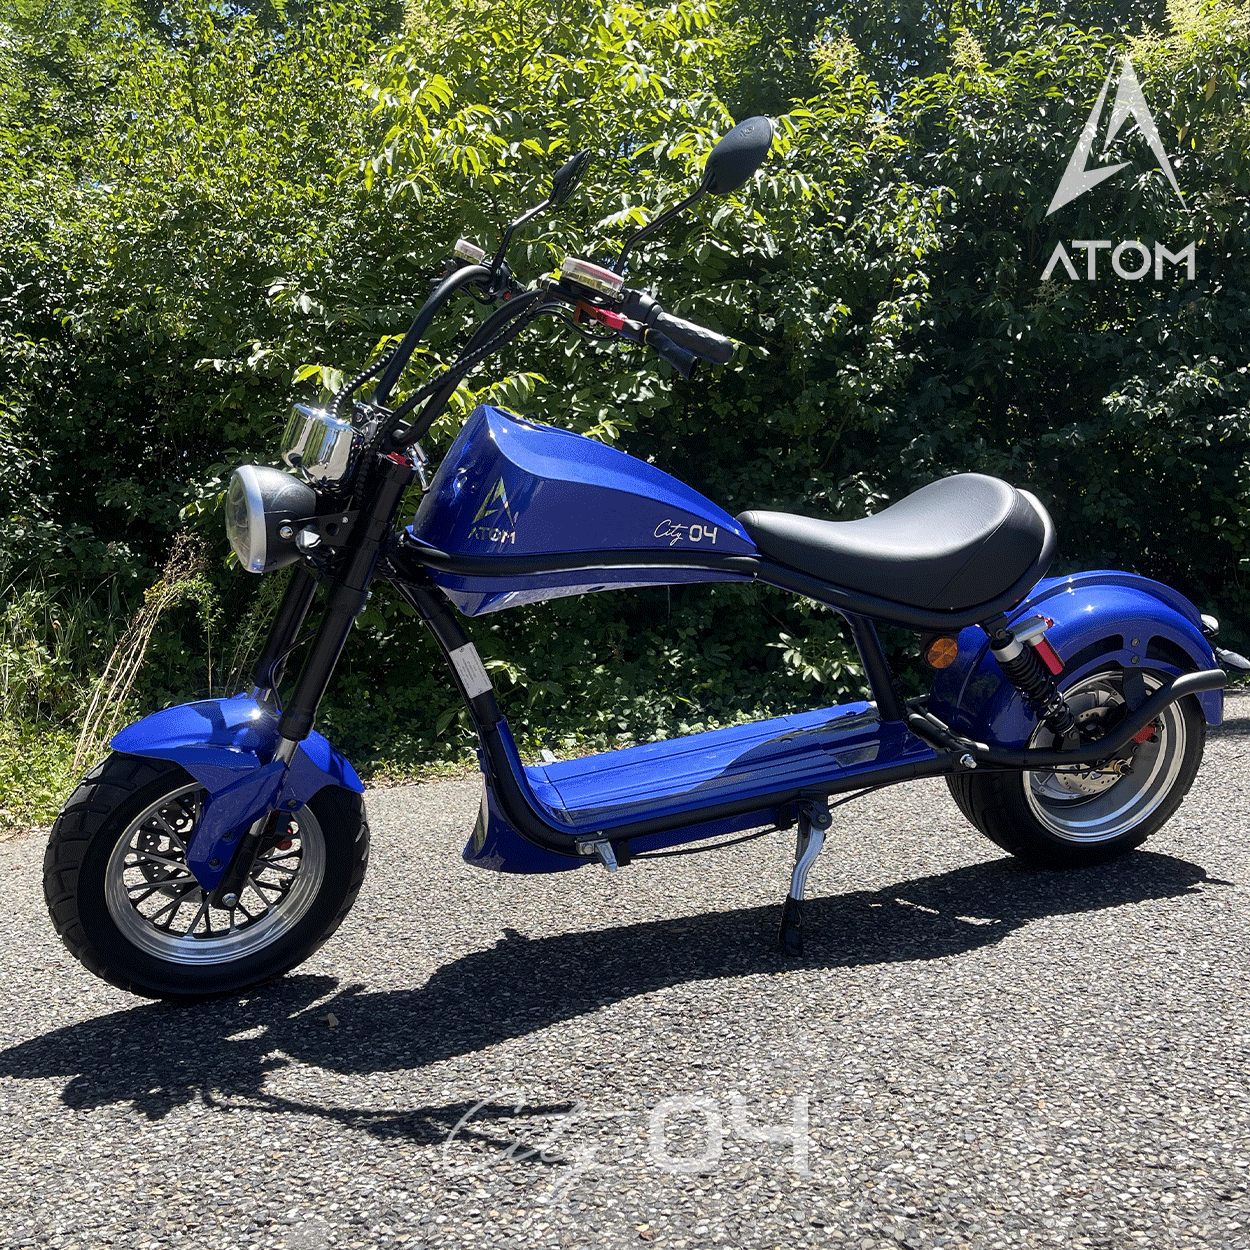 Scooter électrique, Atom City 04 | 2000 W | 50 cc | V-max 45 km/h | Autonomie 60 km - Atom Motors